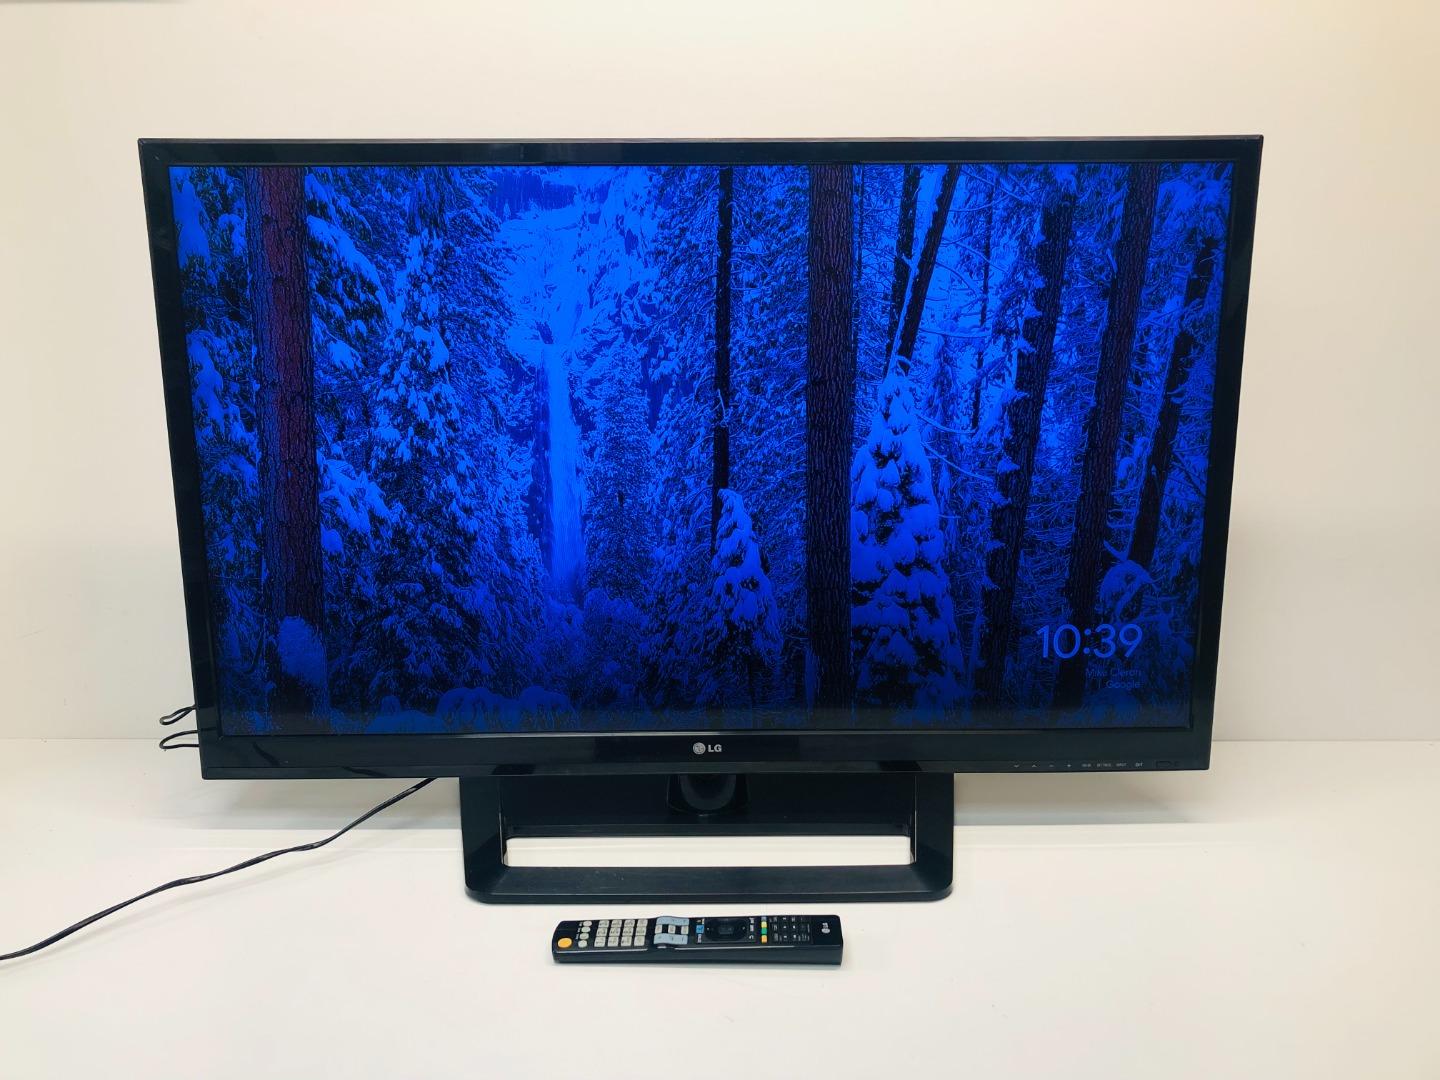 LG 37LS575S TV LED 37'' Full HD Smart TV